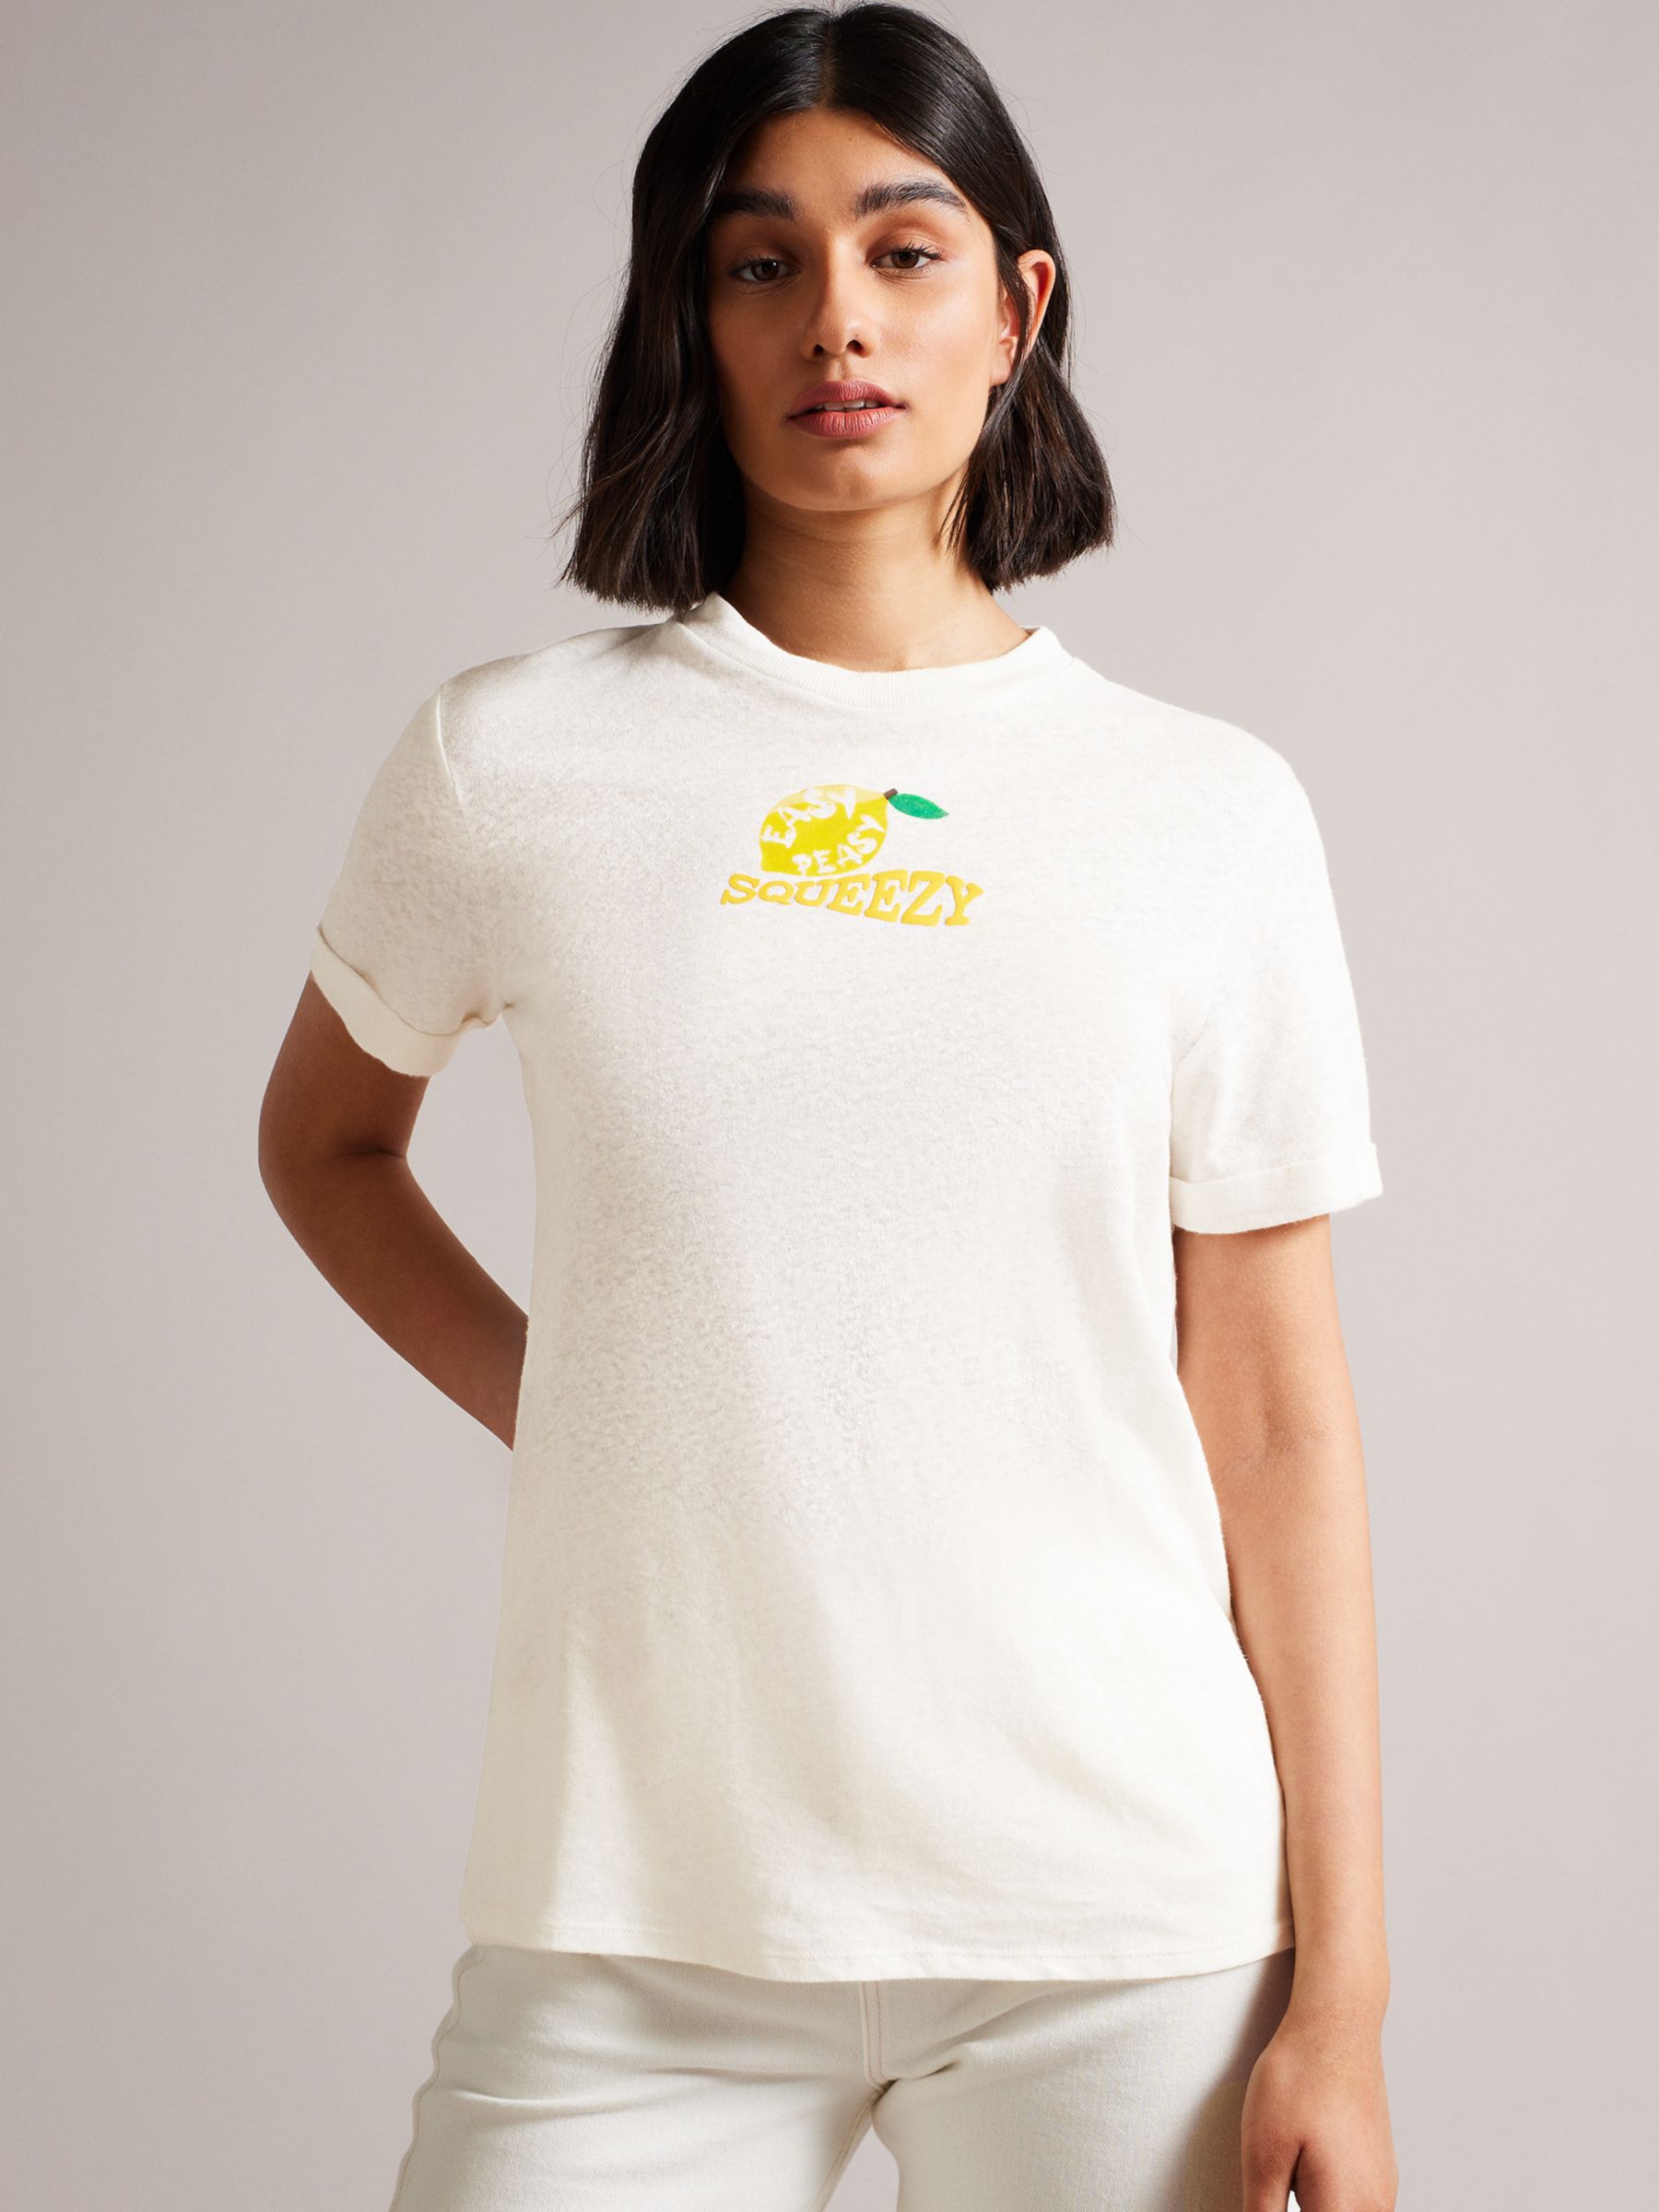 bent Spille computerspil Nuværende Ted Baker Ingella Lemon T-Shirt, White, 6